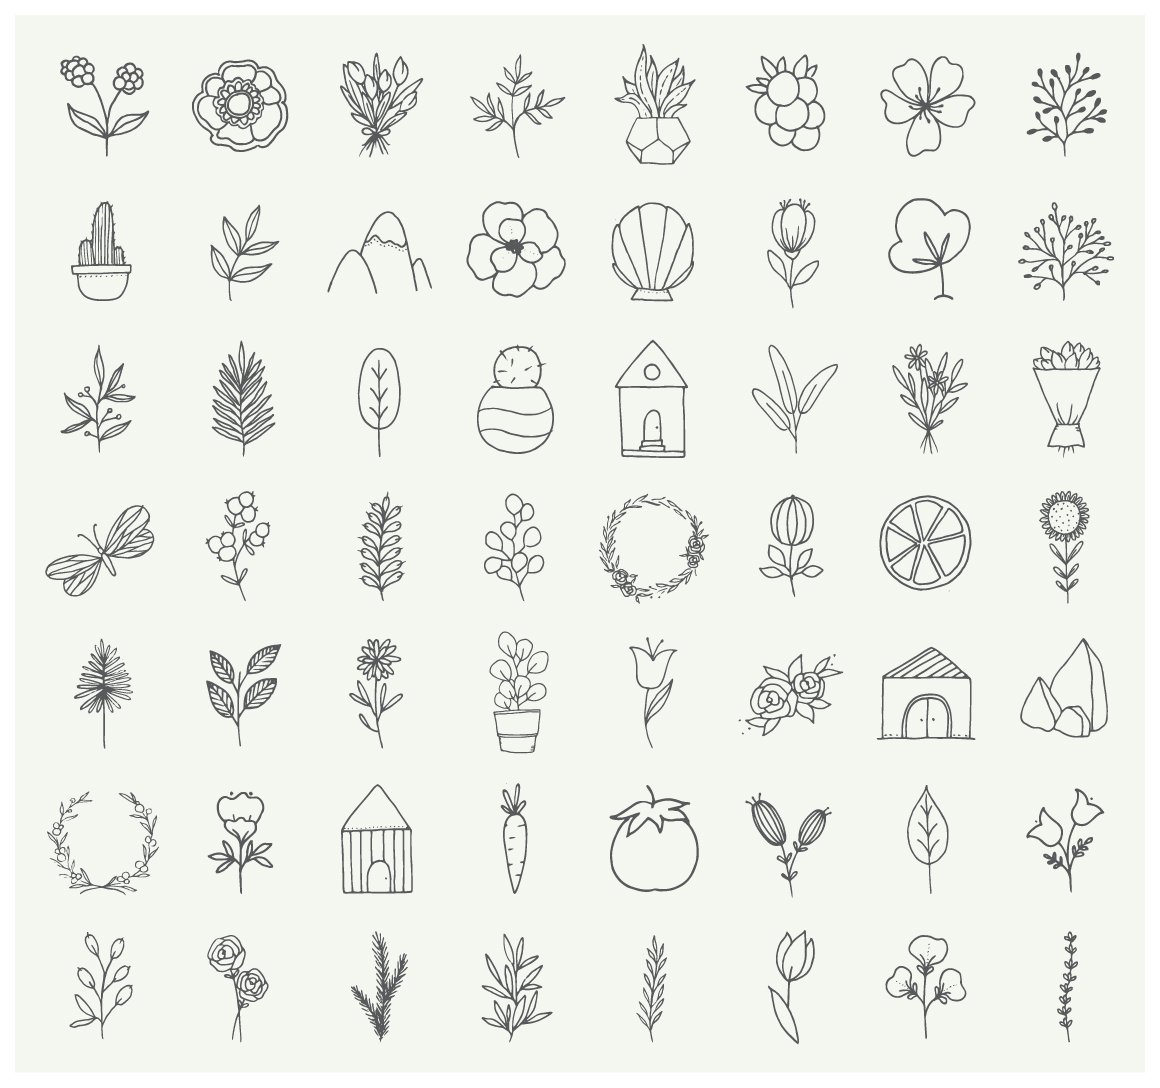 Nature & Plants Minimalist Doodles